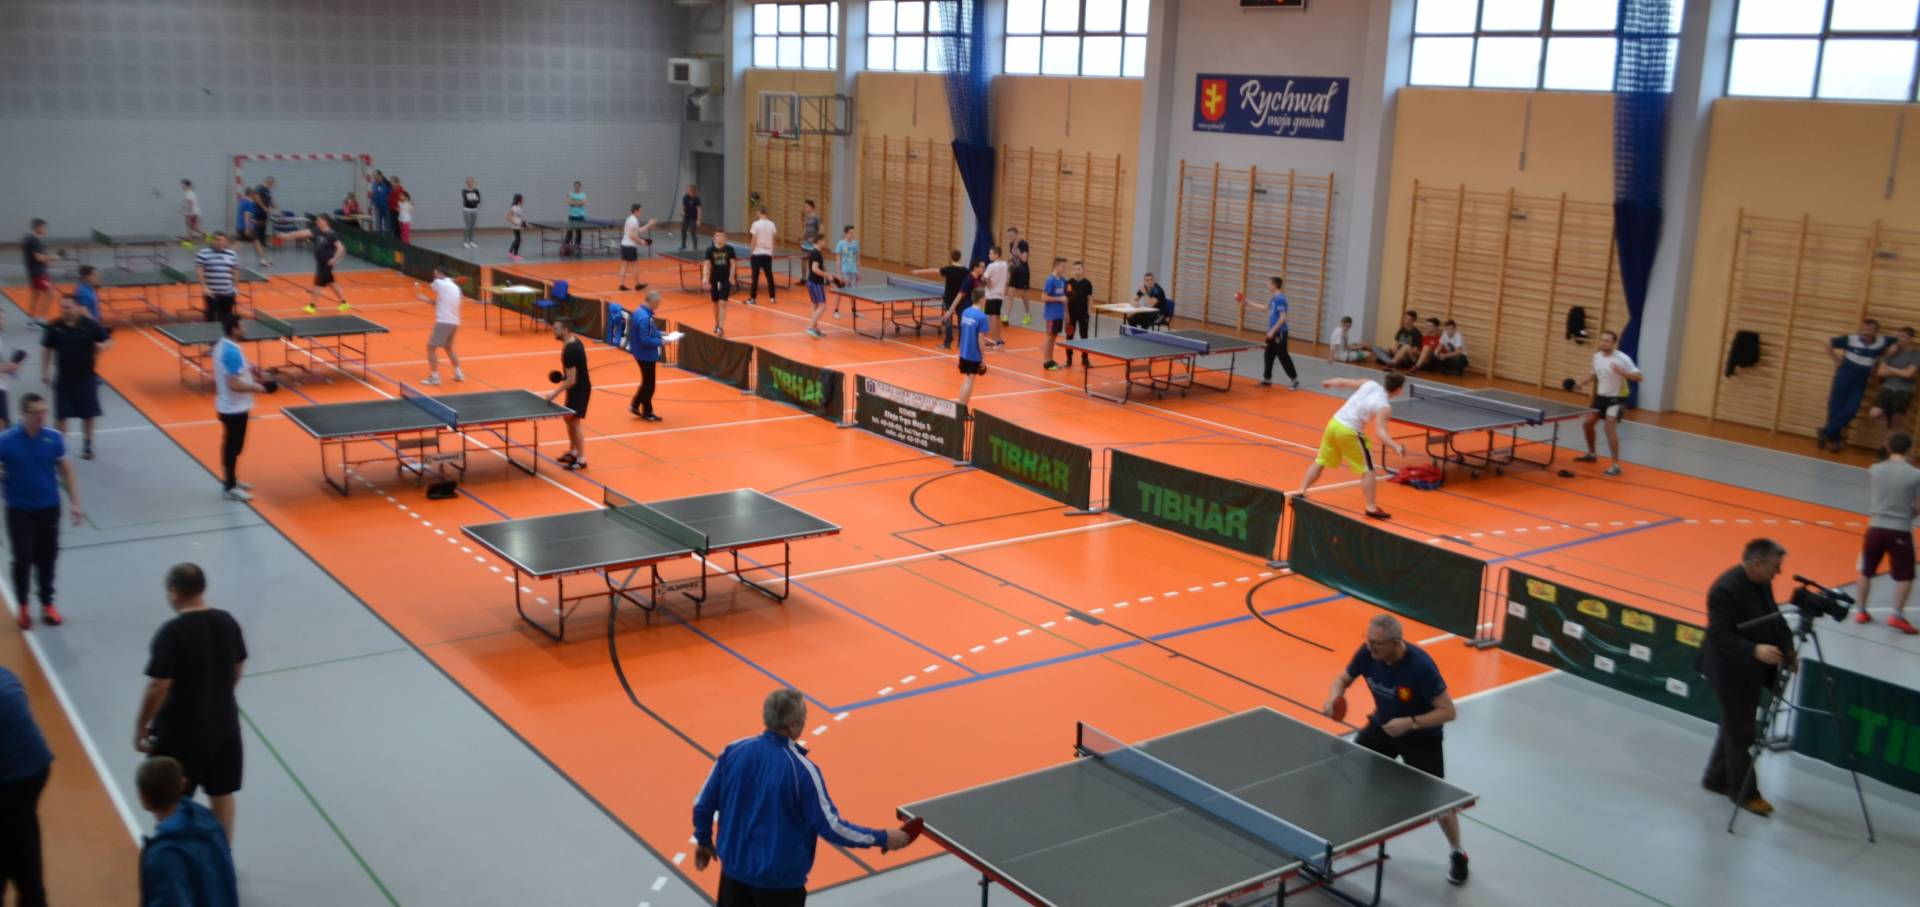 IV Gminny Turniej Tenisa Stołowego_10 zdjęcie przedstawia: salę gimnastyczną i stoły do tenisa stołowego oraz ludzi grających